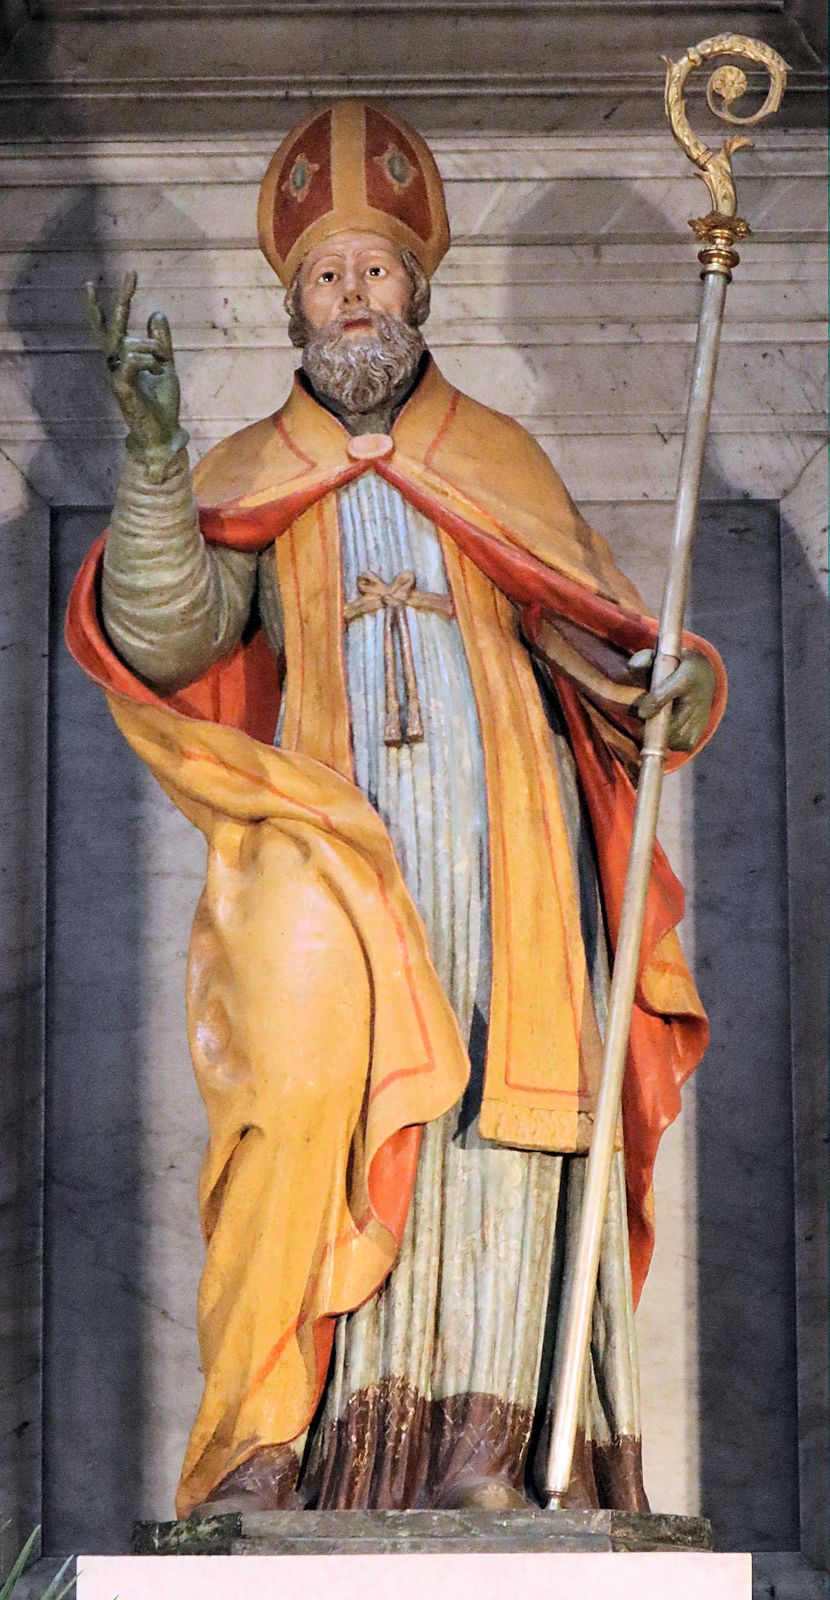 Statue in der Kathedrale in Nola